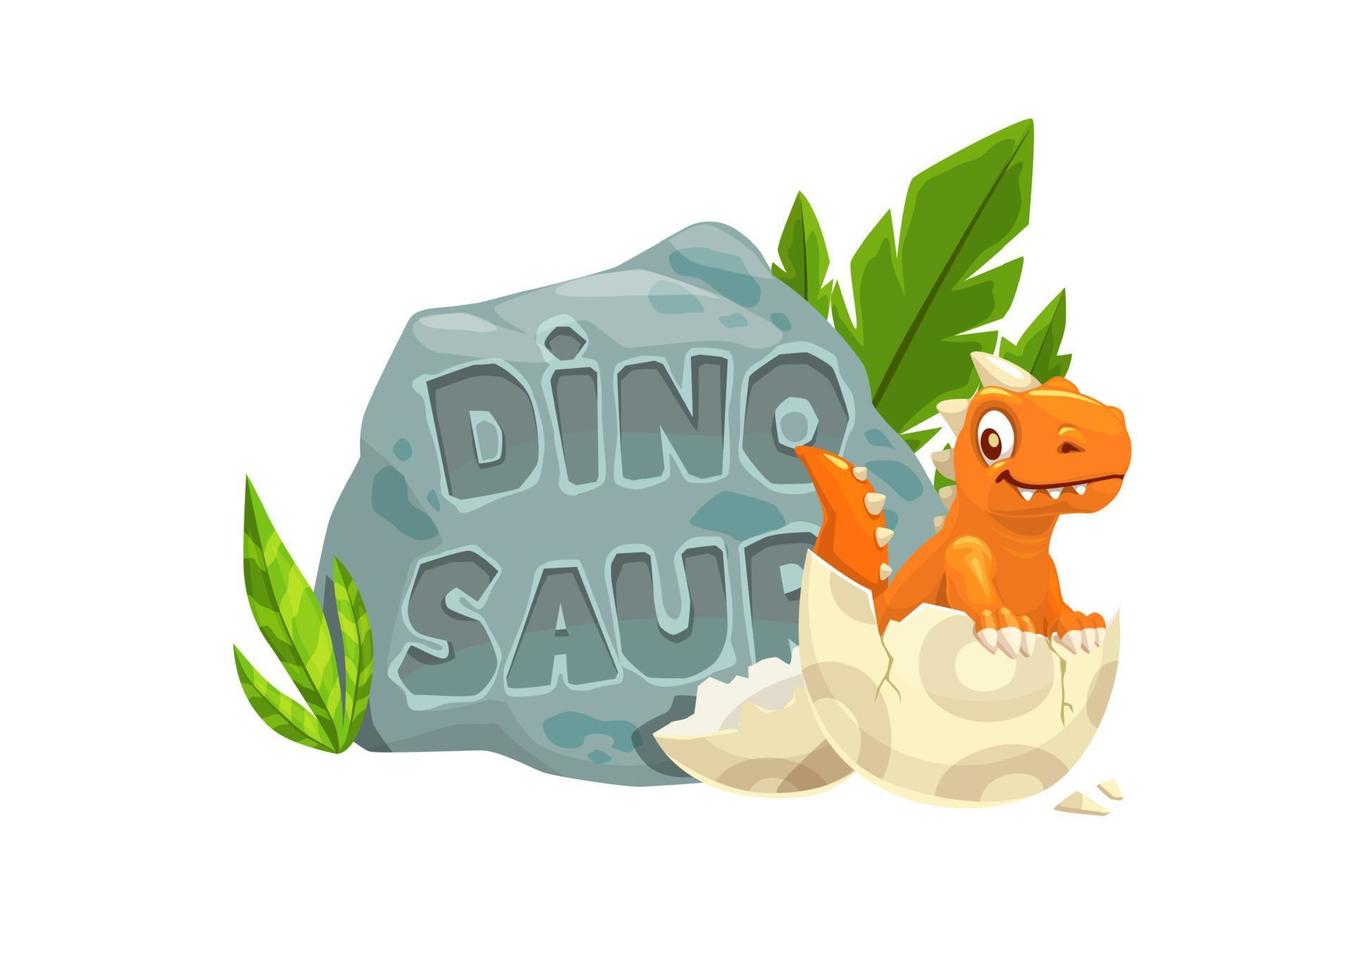 personagem de dinossauro engraçado dos desenhos animados e ovo de dino vetor